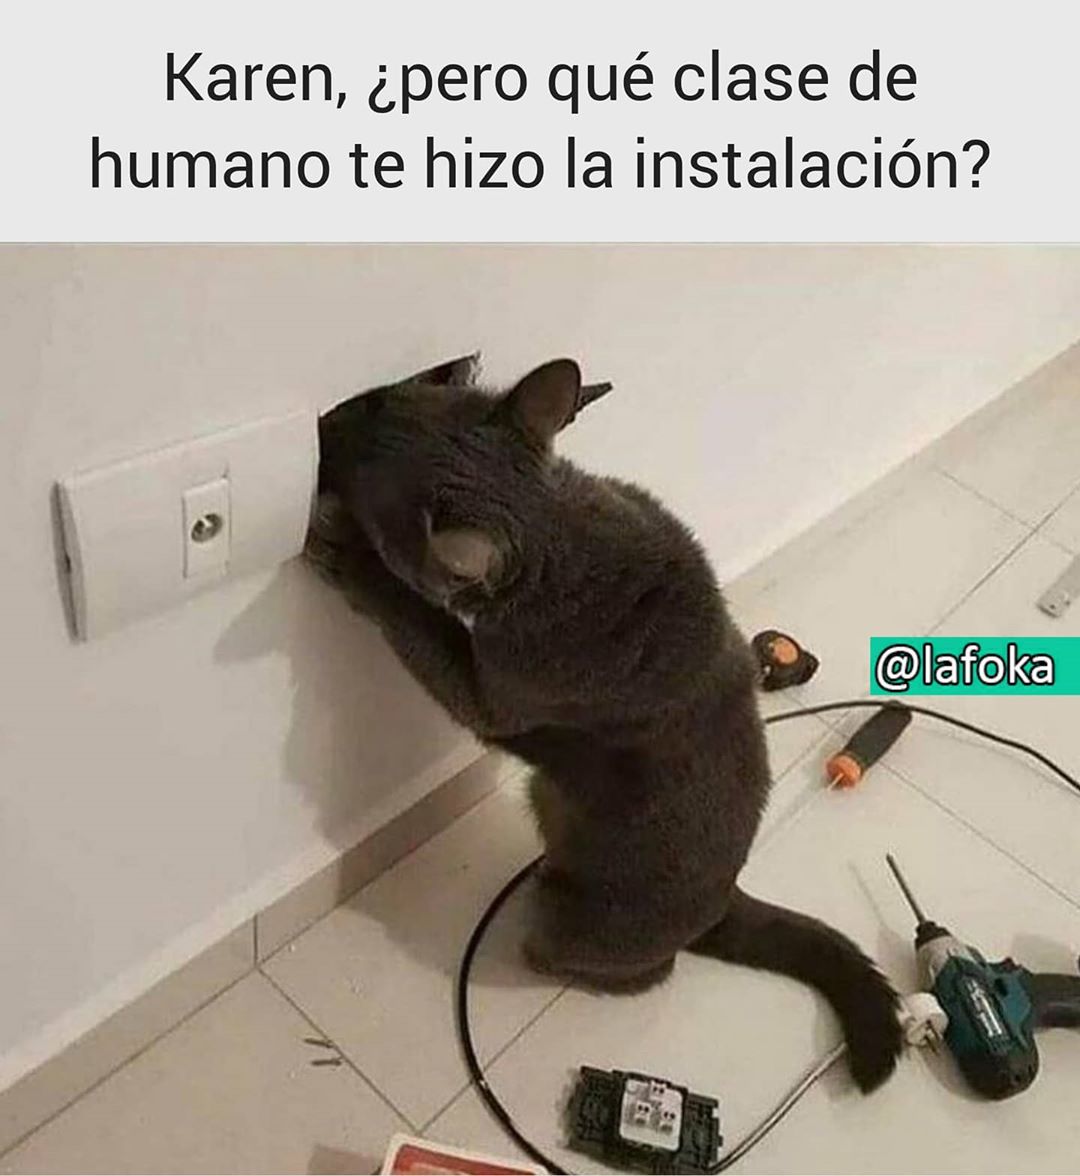 Karen, ¿pero qué clase de humano te hizo la instalación?